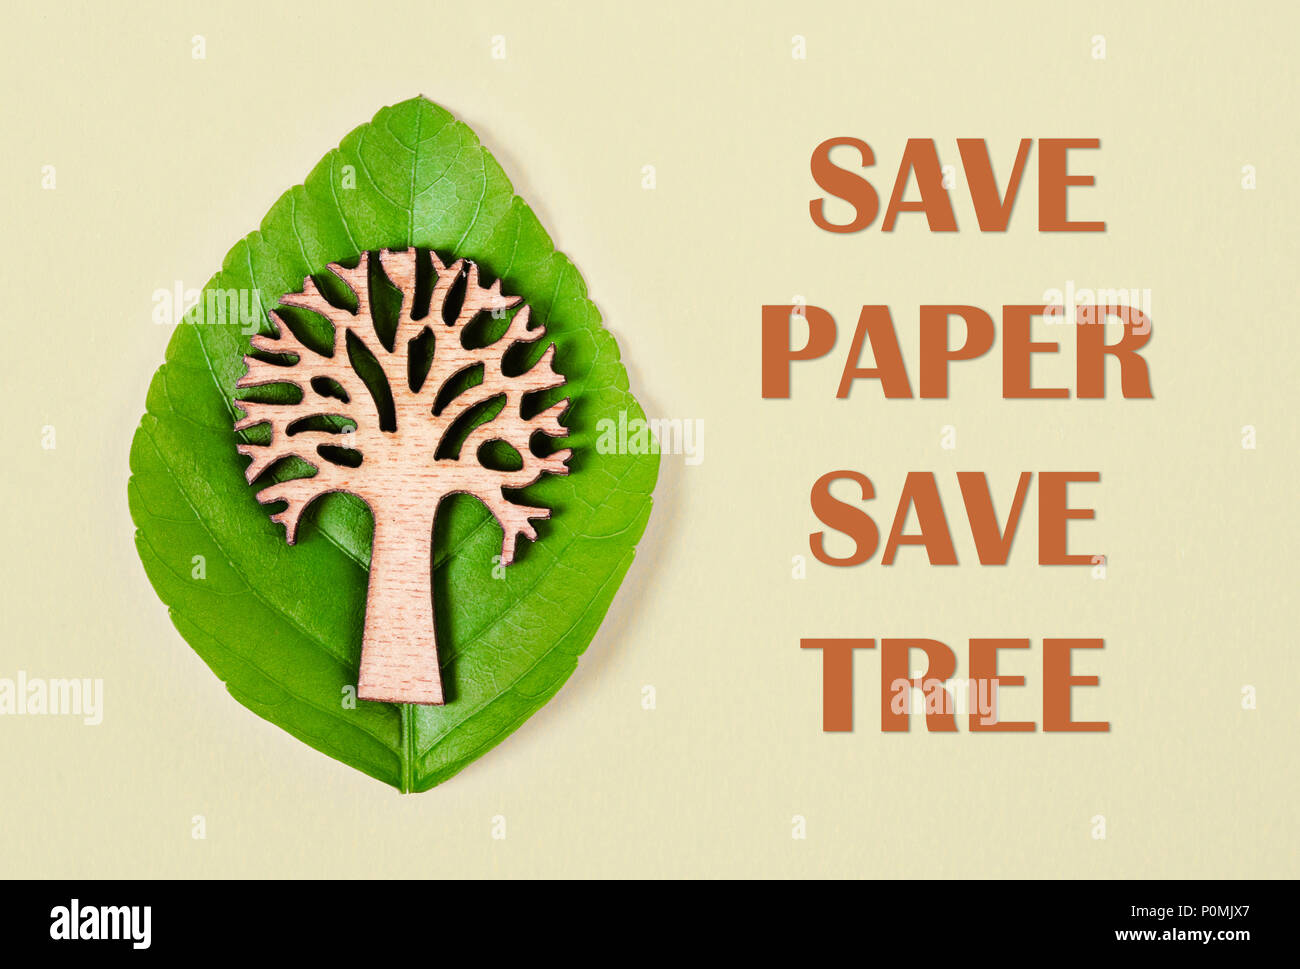 Save paper save tree texte présentant de l'arbre et feuille verte. Économiser de l'environnement concept. Banque D'Images